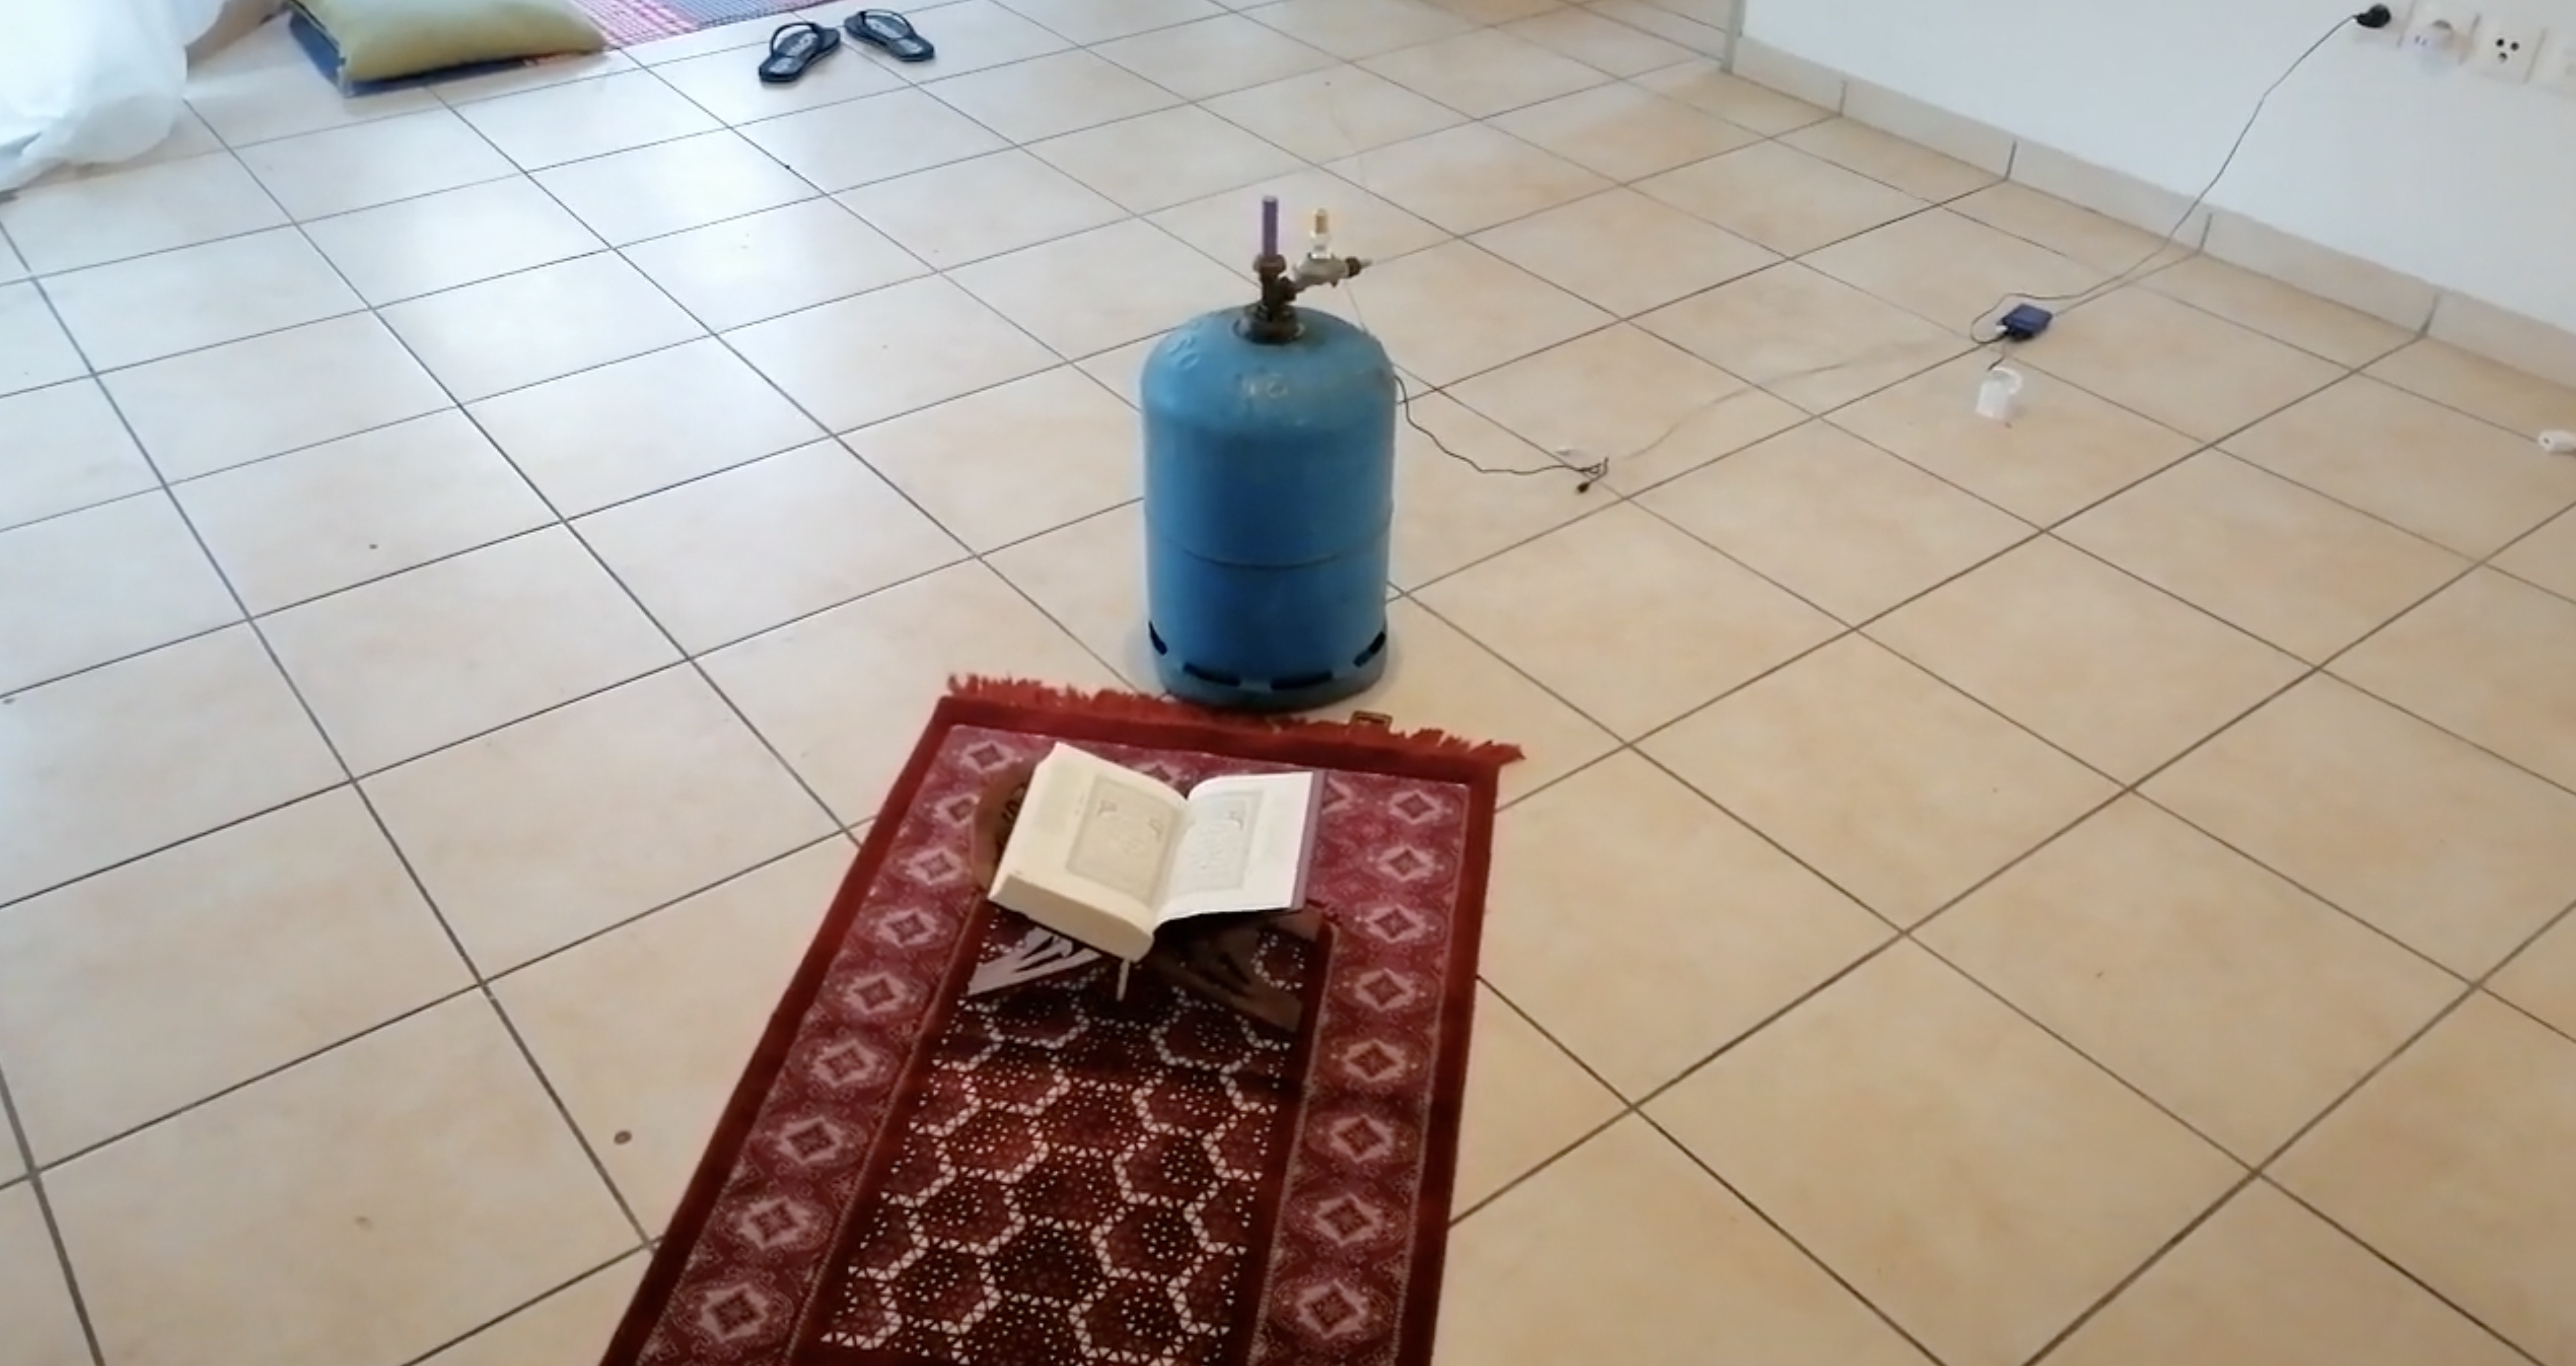 Bombe artisanale au Moufia : L’homme a filmé son installation